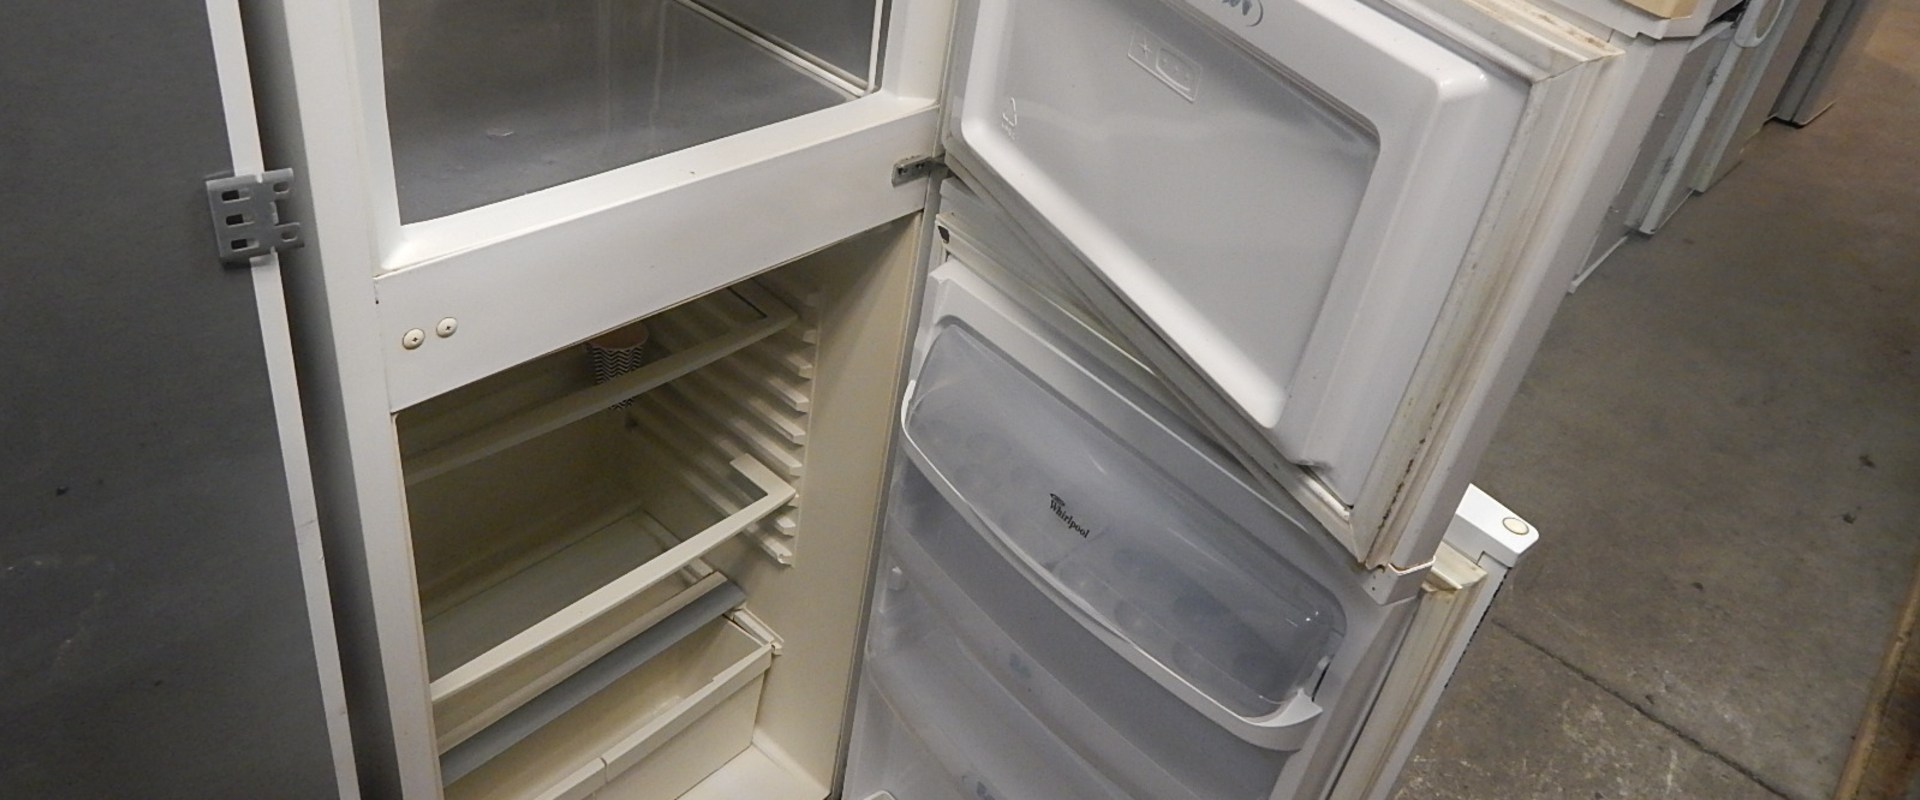 Kunnen koelkasten worden gerepareerd?